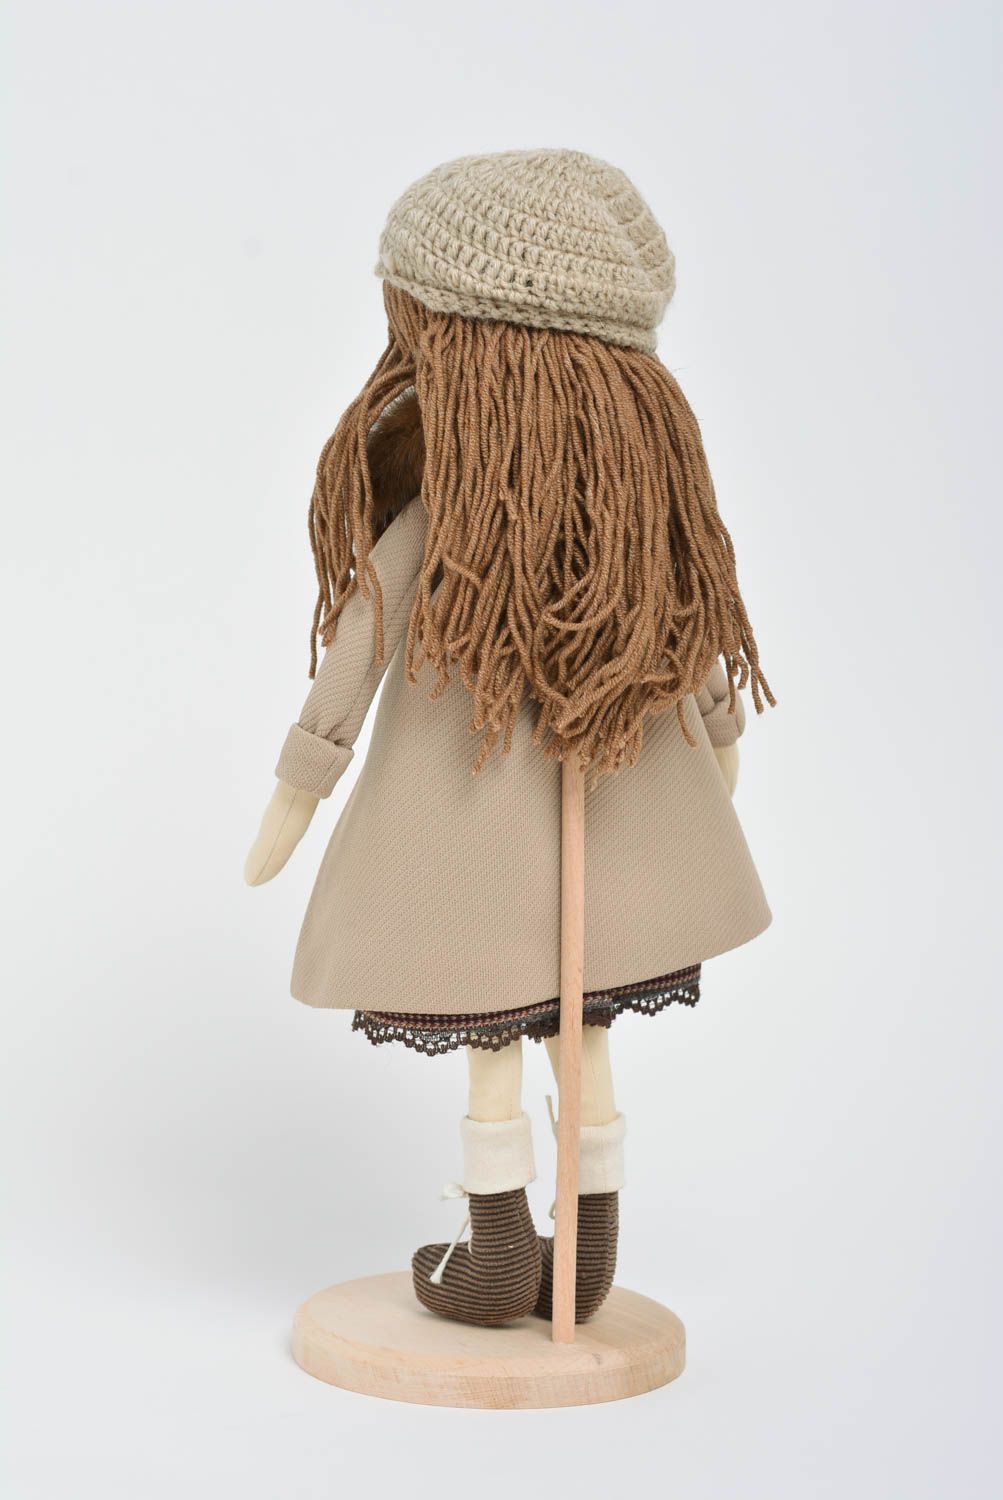 Игрушка кукла из ткани девочка в пальто на подставке небольшая ручной работы  фото 4